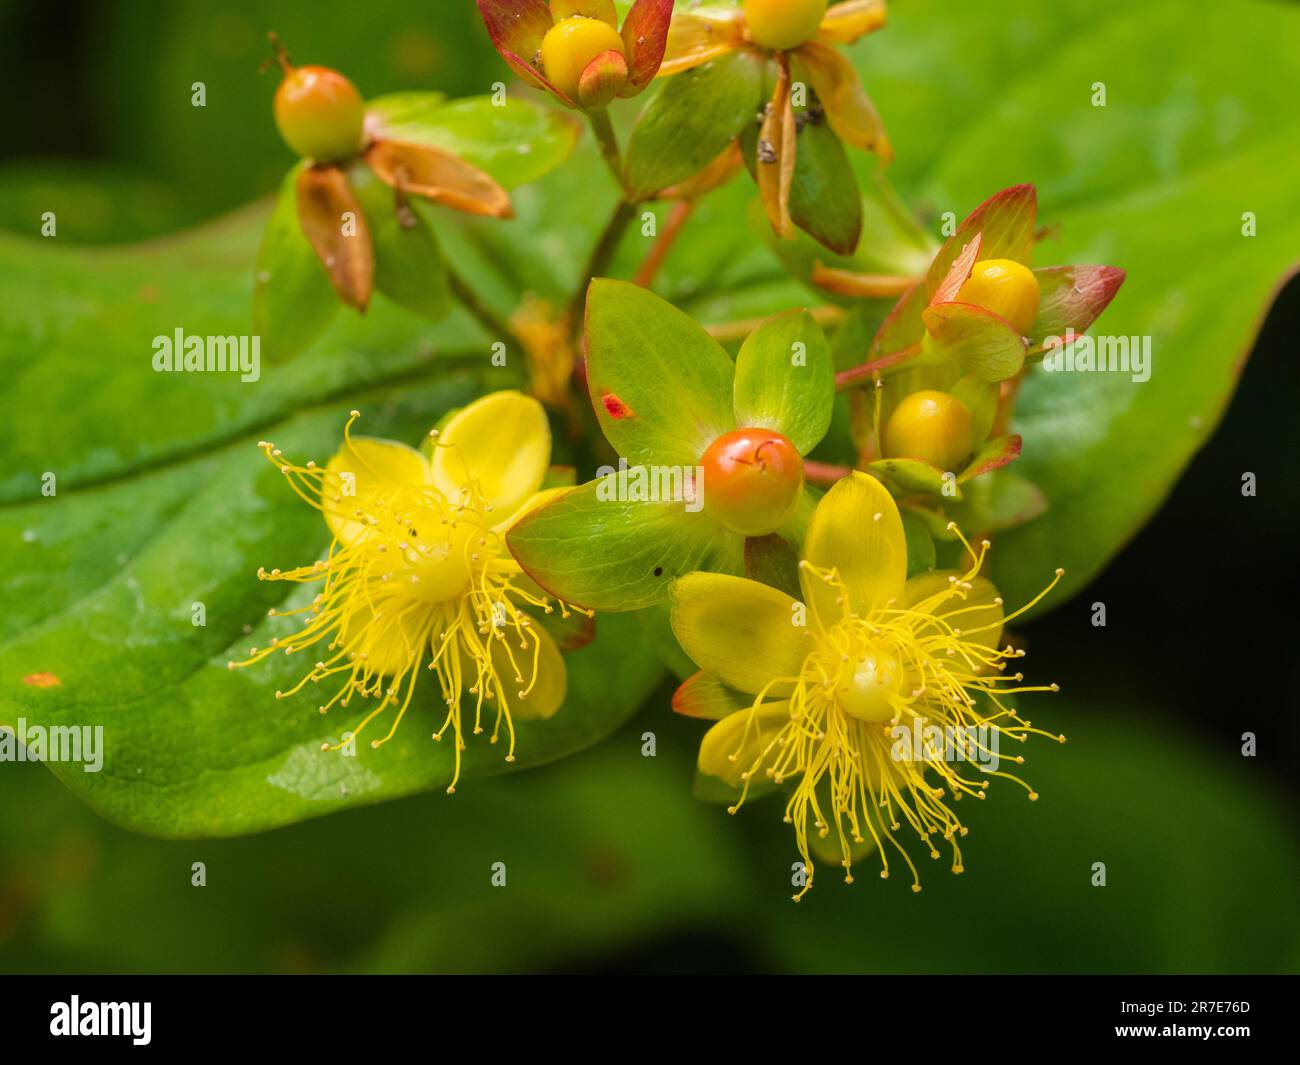 Gelbe Blüten und sich entwickelnde Beeren des im Vereinigten Königreich heimischen Strauchtutsan Hypericum androsaemum, der oft als Gartenpflanze angebaut wird Stockfoto